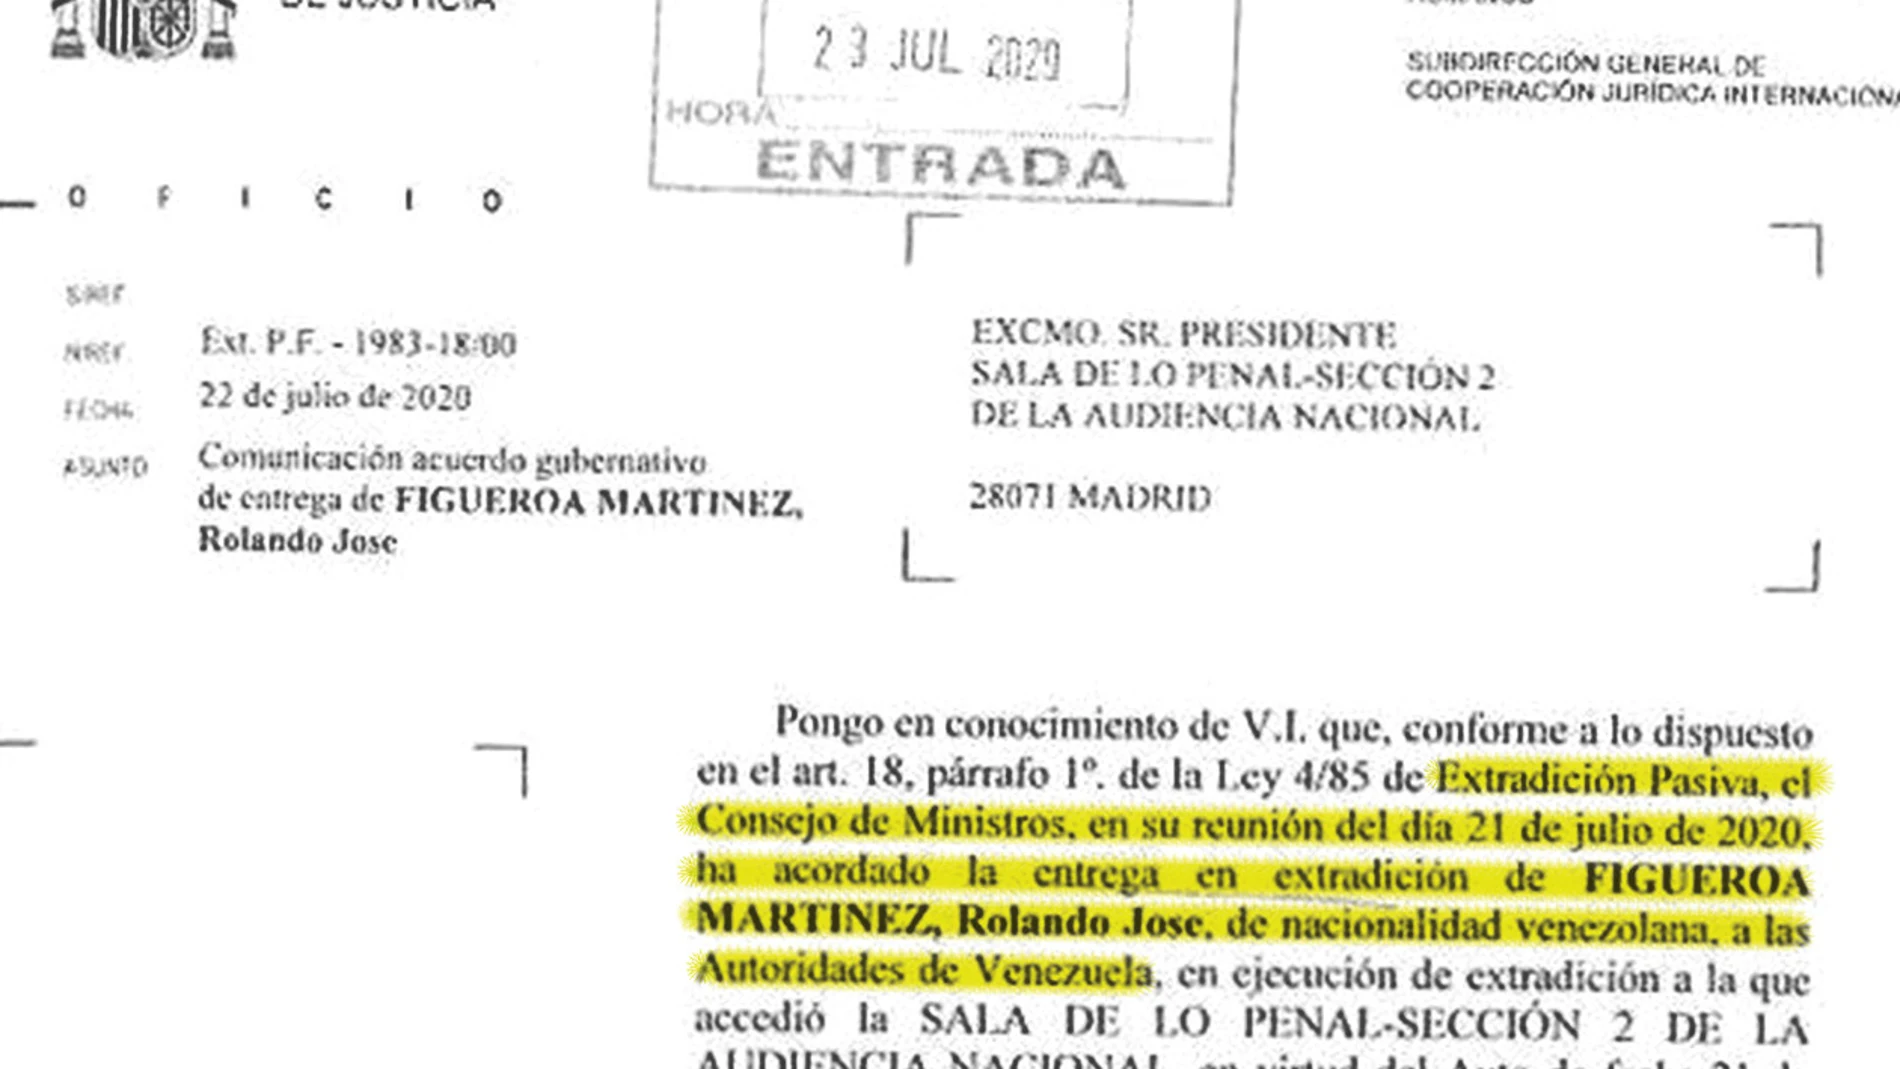 Documento en el que se comunica la decisión del Consejo de Ministros en la que se acuerda la entrega a Venezuela del disidente Rolando Figueroa